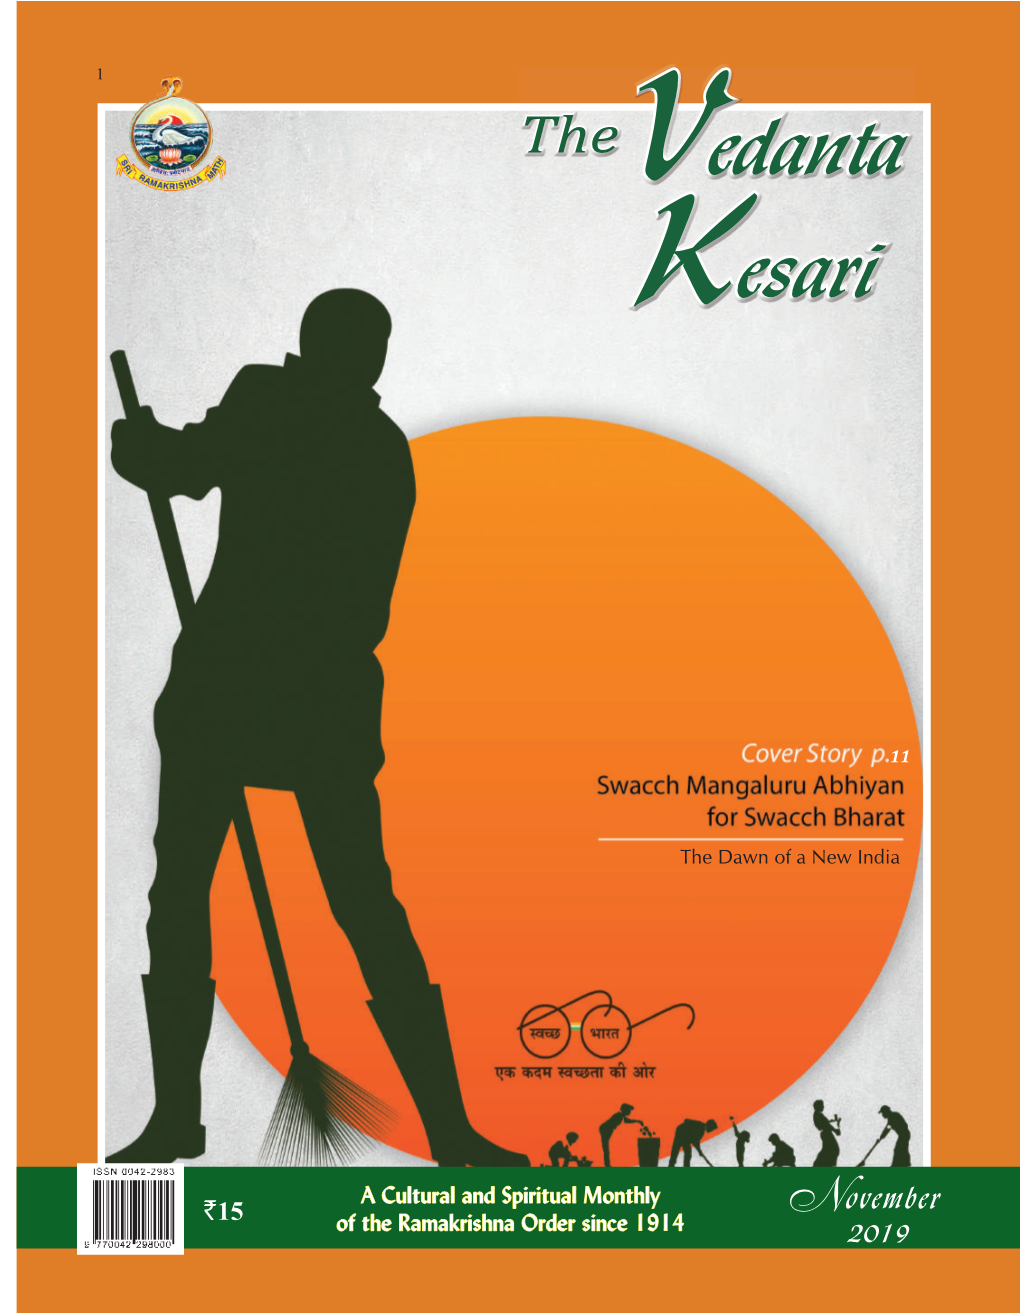 Ramakrishna Math, Chennai - 600 004 and Web Site : Printed by B